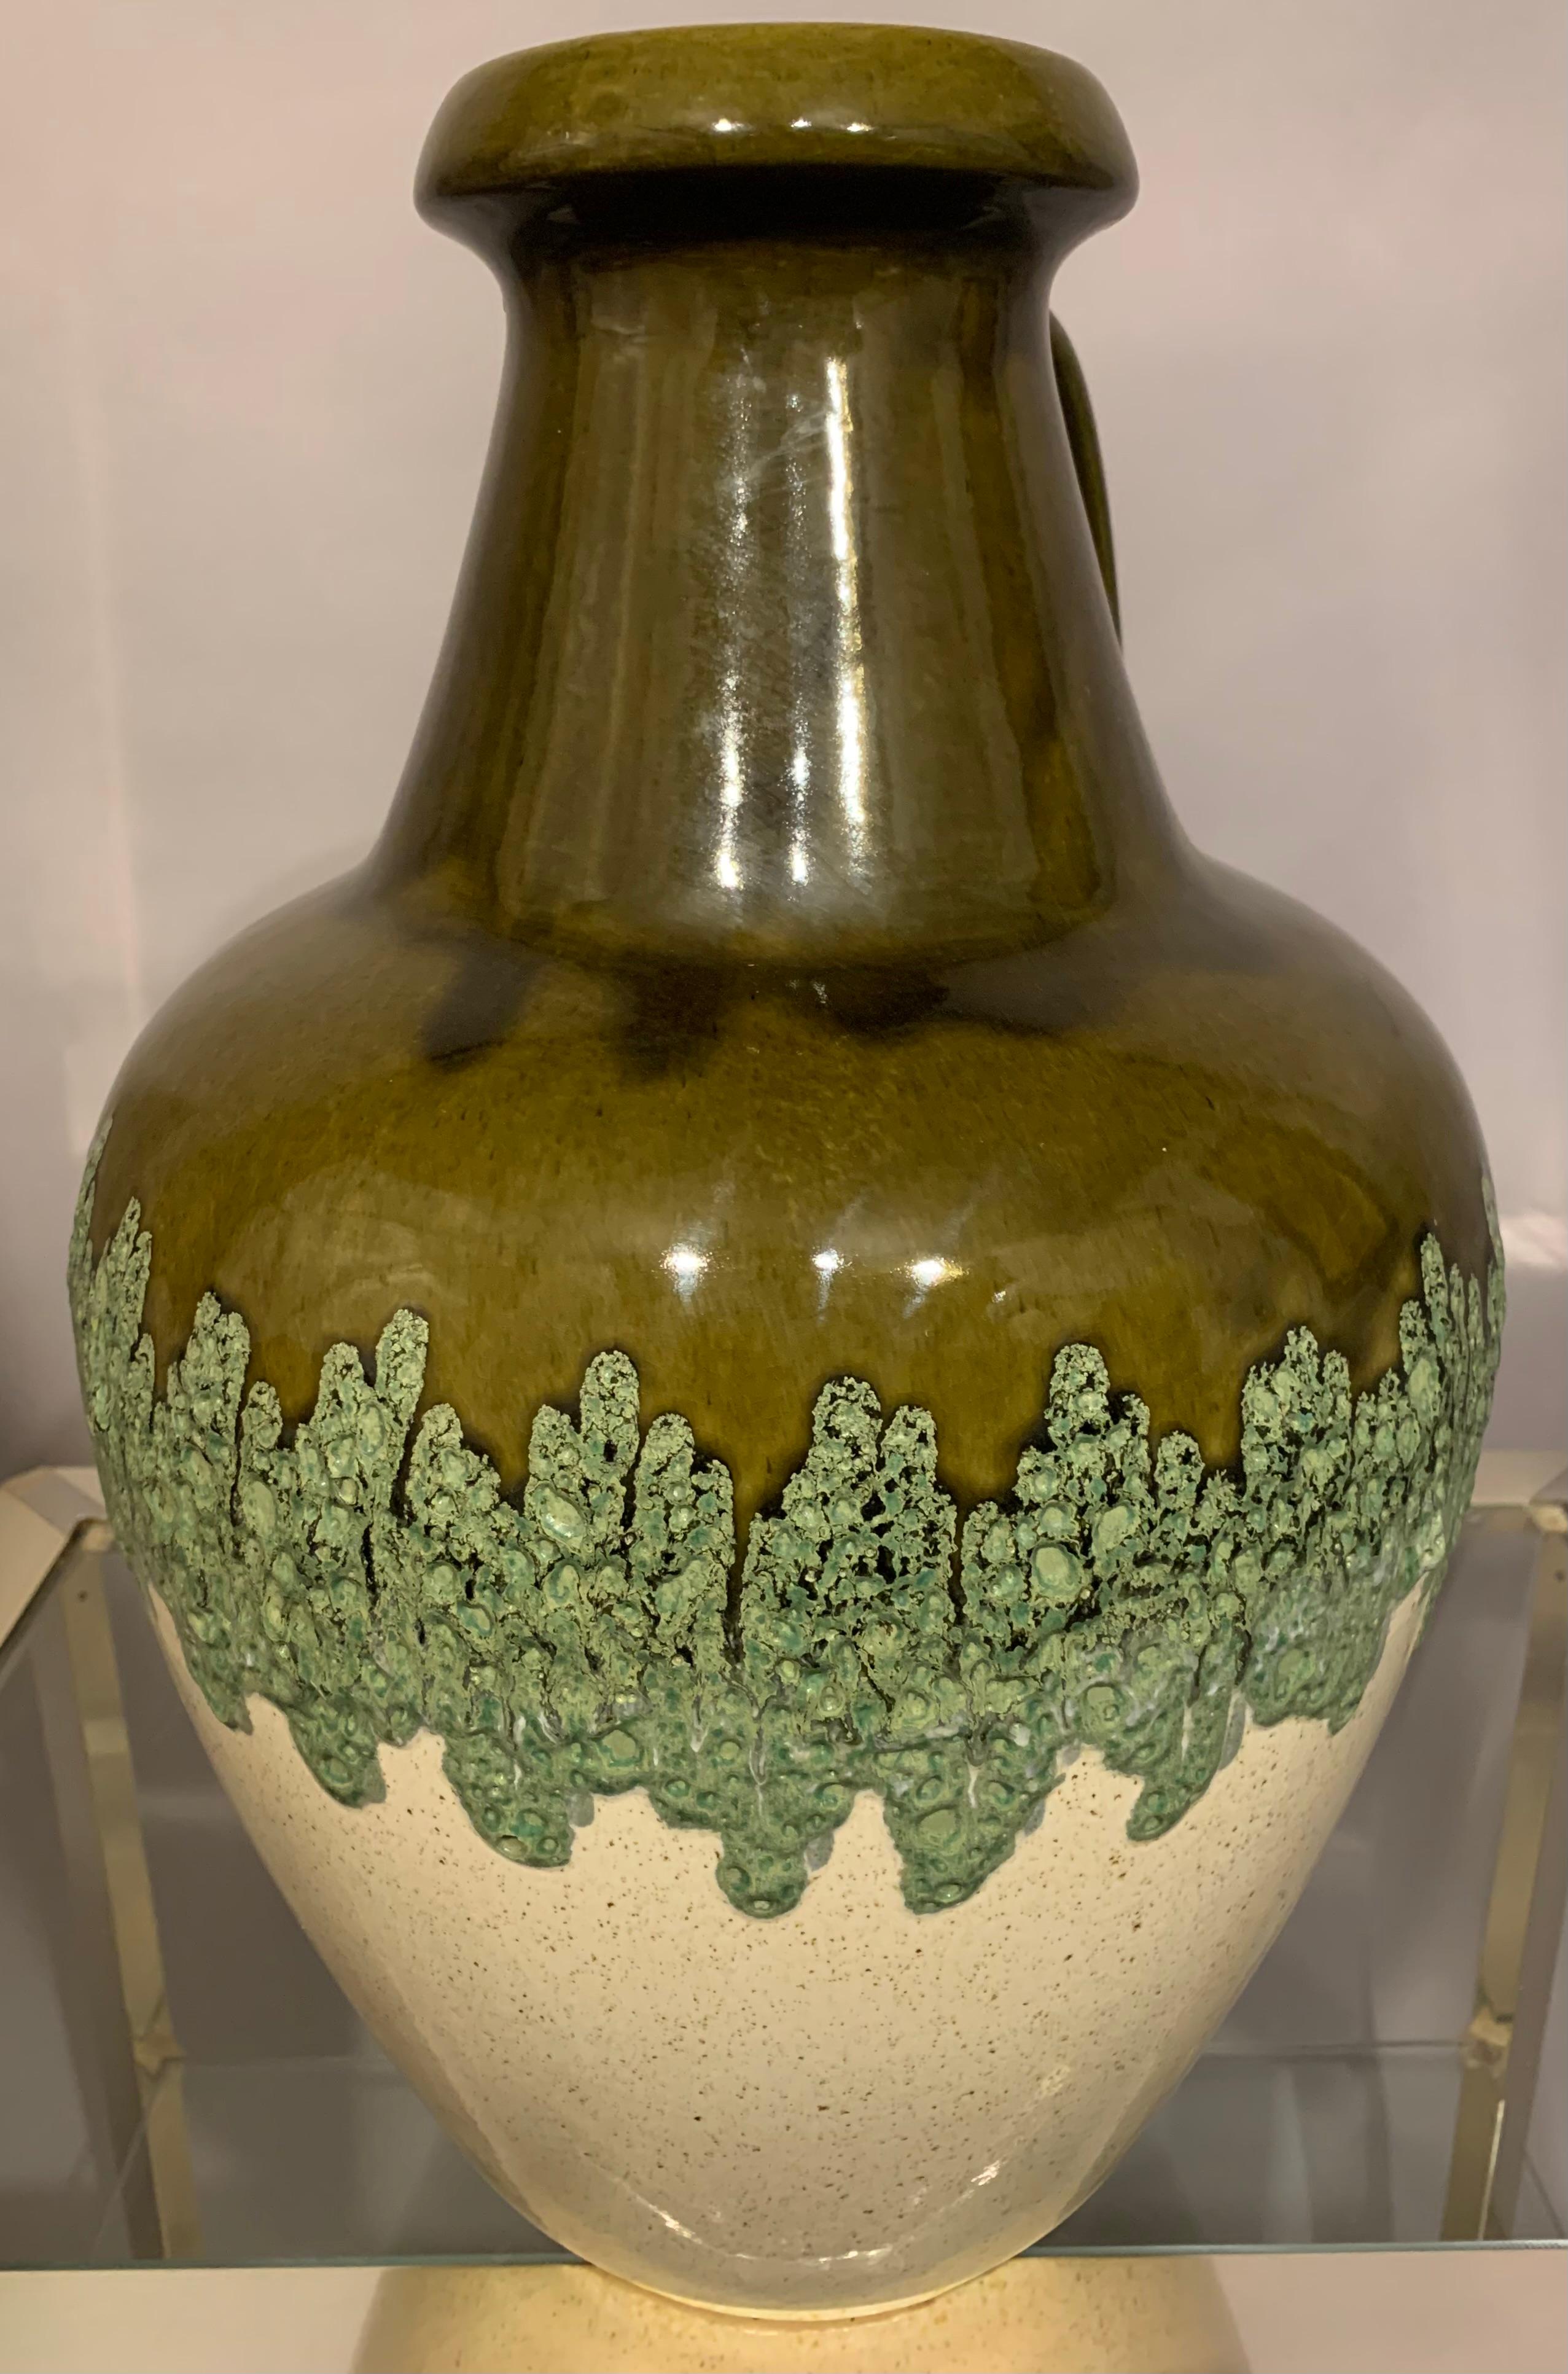 Large West German 1970s Fat Lava Bay Keramik Glazed Jug or Vase Model 71 45 1